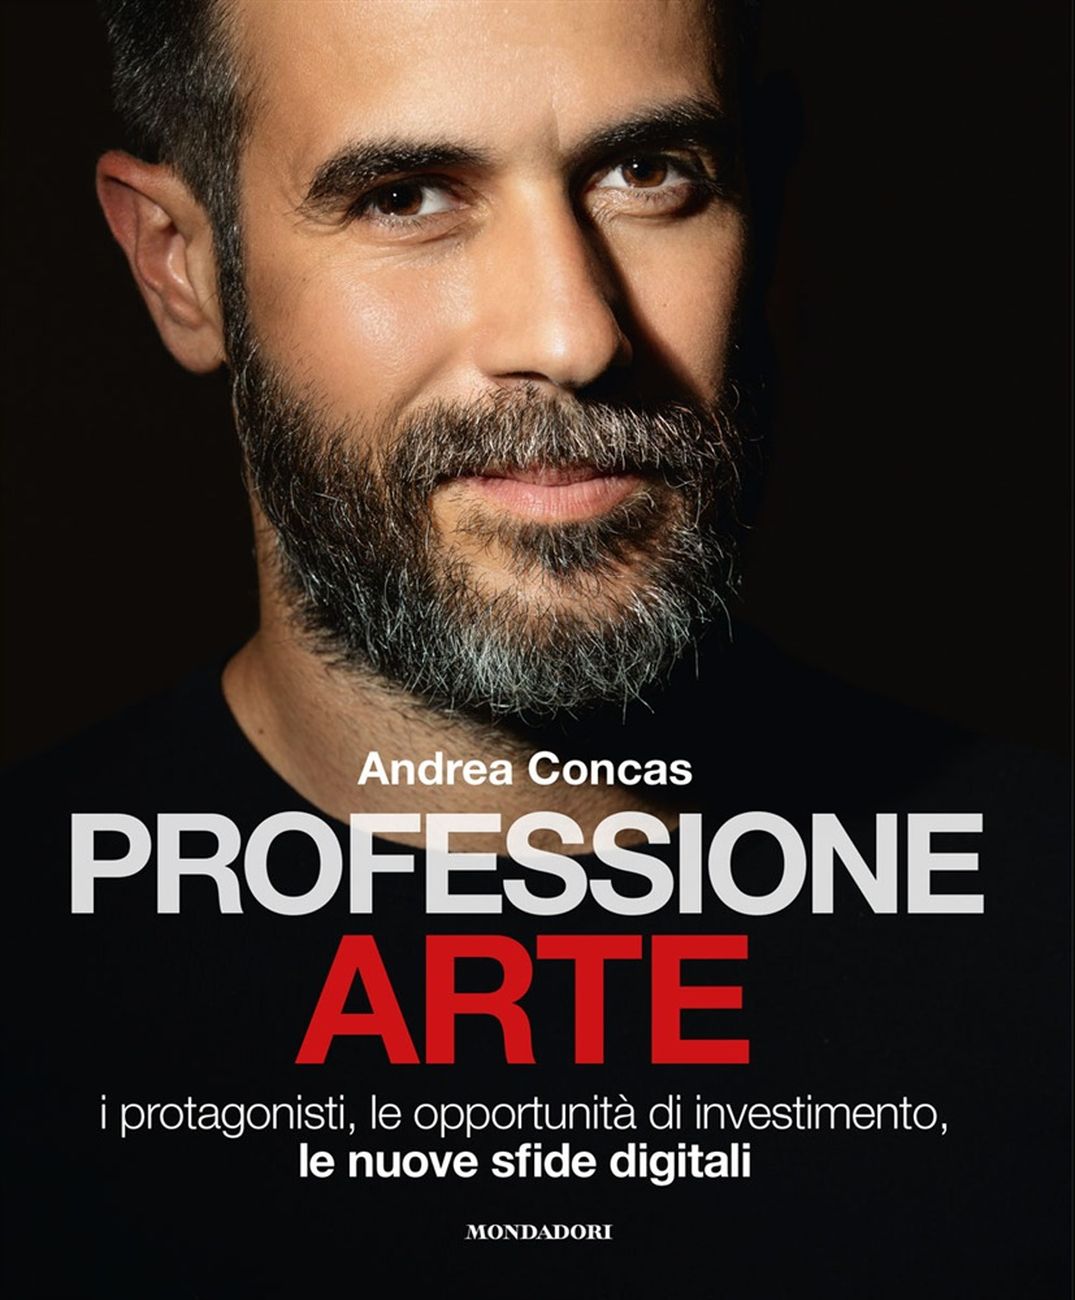 Andrea Concas – Professione arte (Mondadori Electa, Milano 2020)